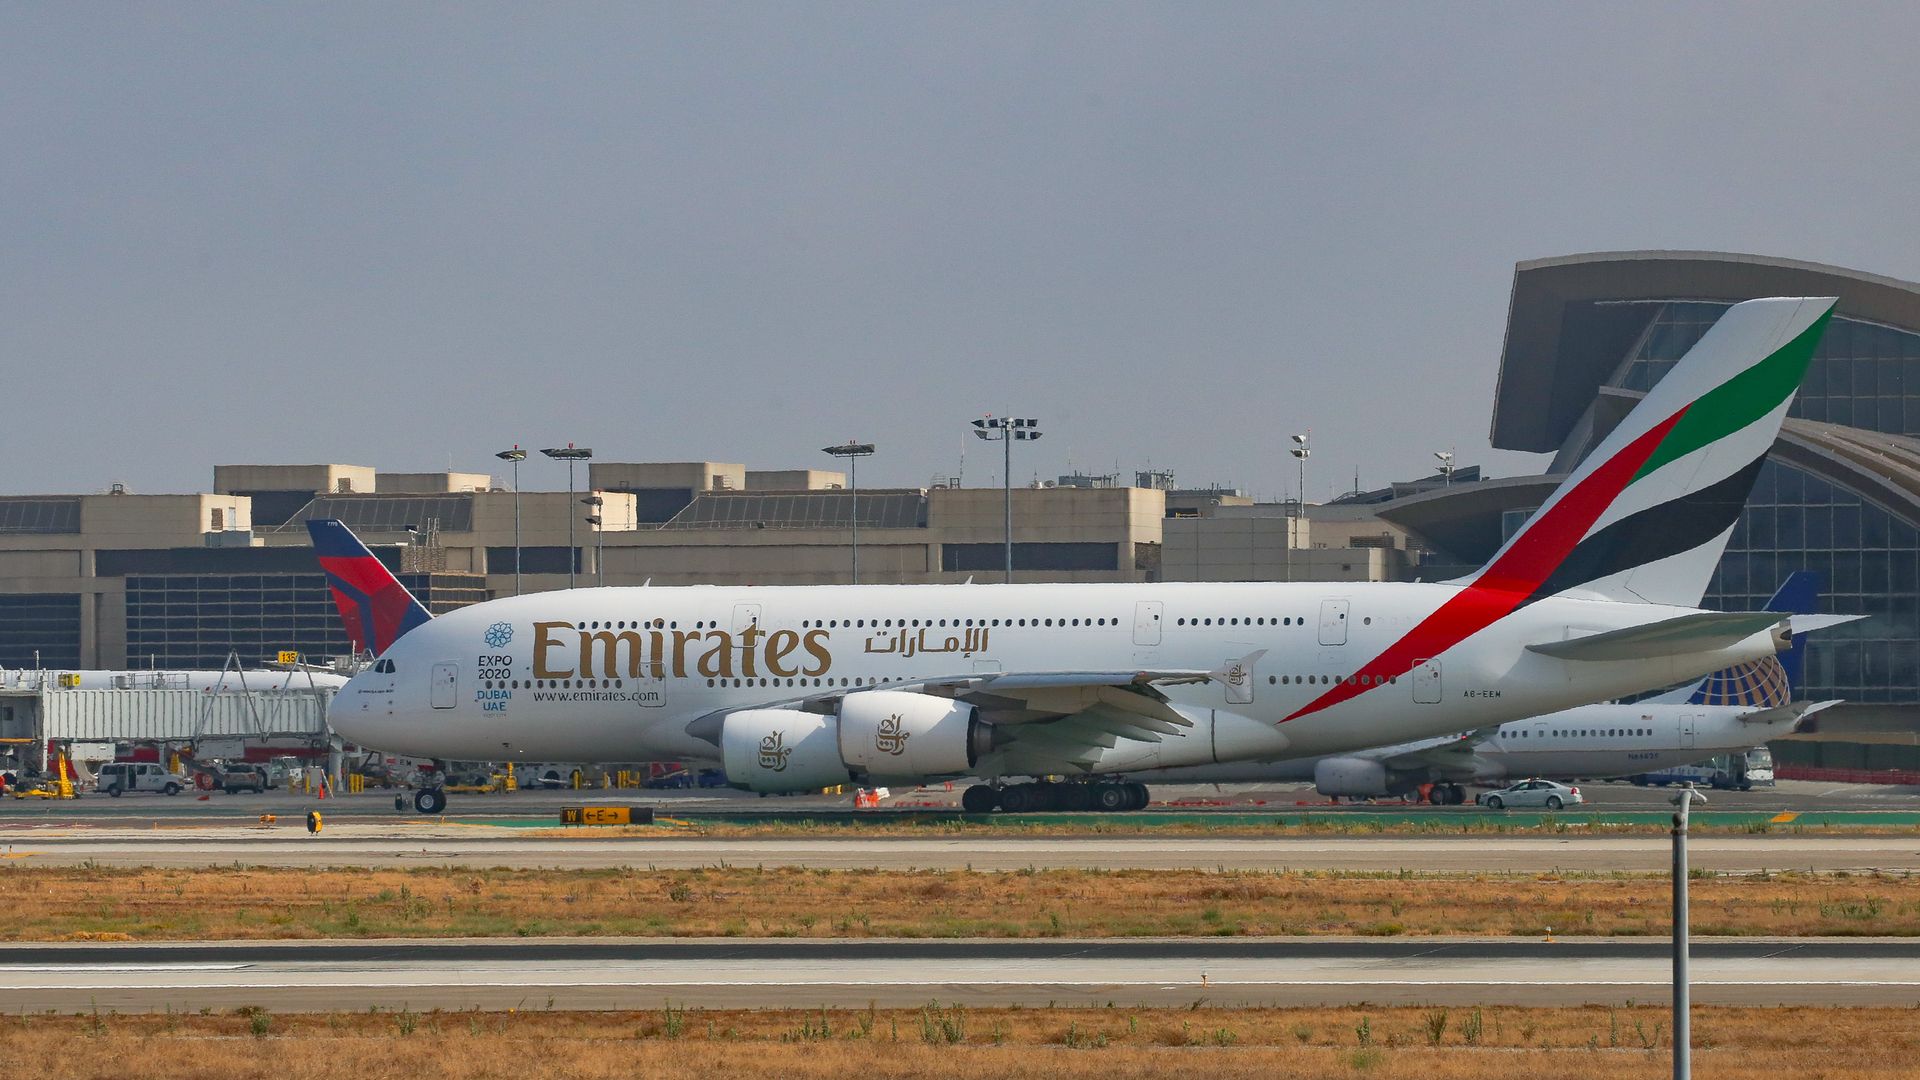 Emirates aircraft.